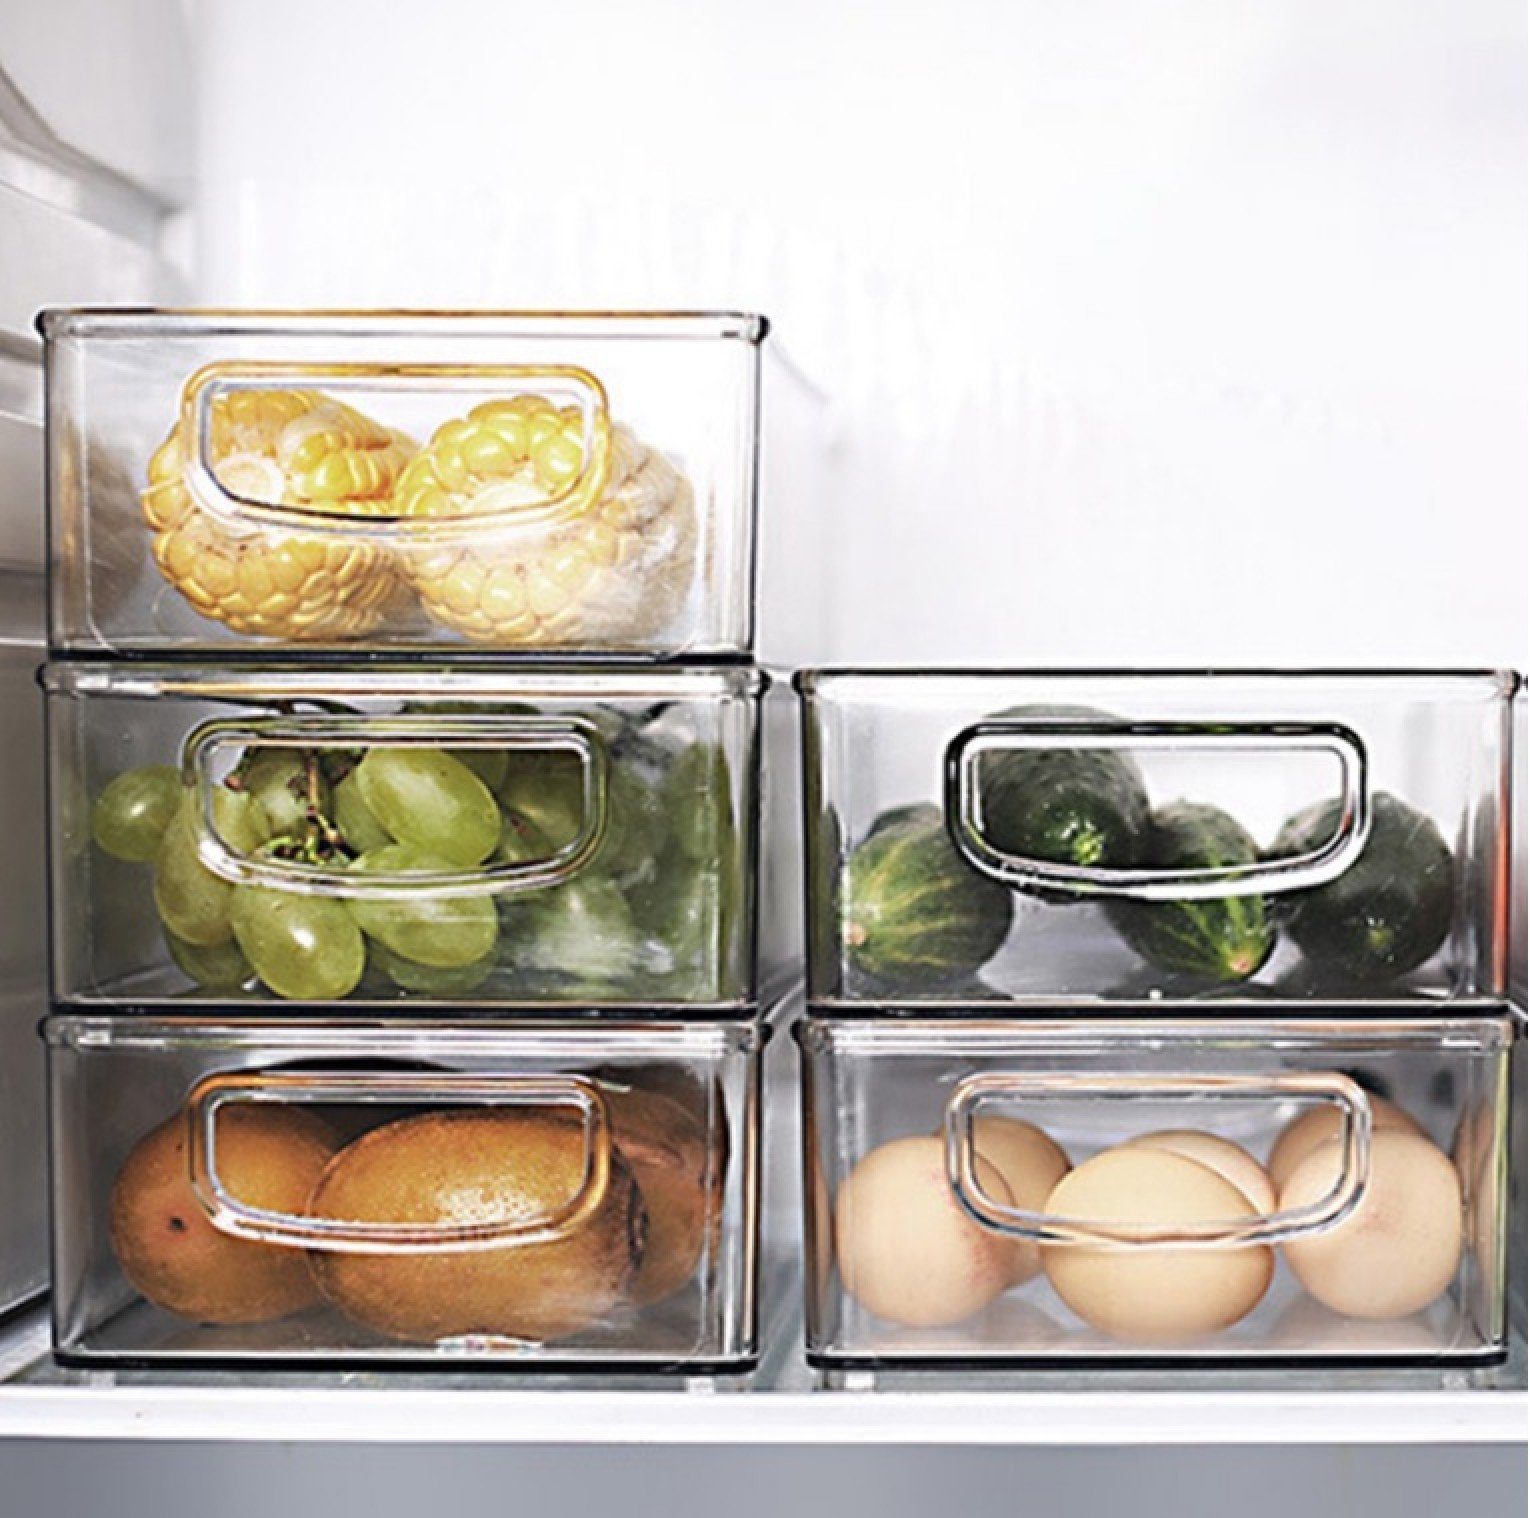 BAYLI Pizzaschneider - Aufbewahrungsbox für 2er Stapelbar, die Kühlschrank Organizer Set